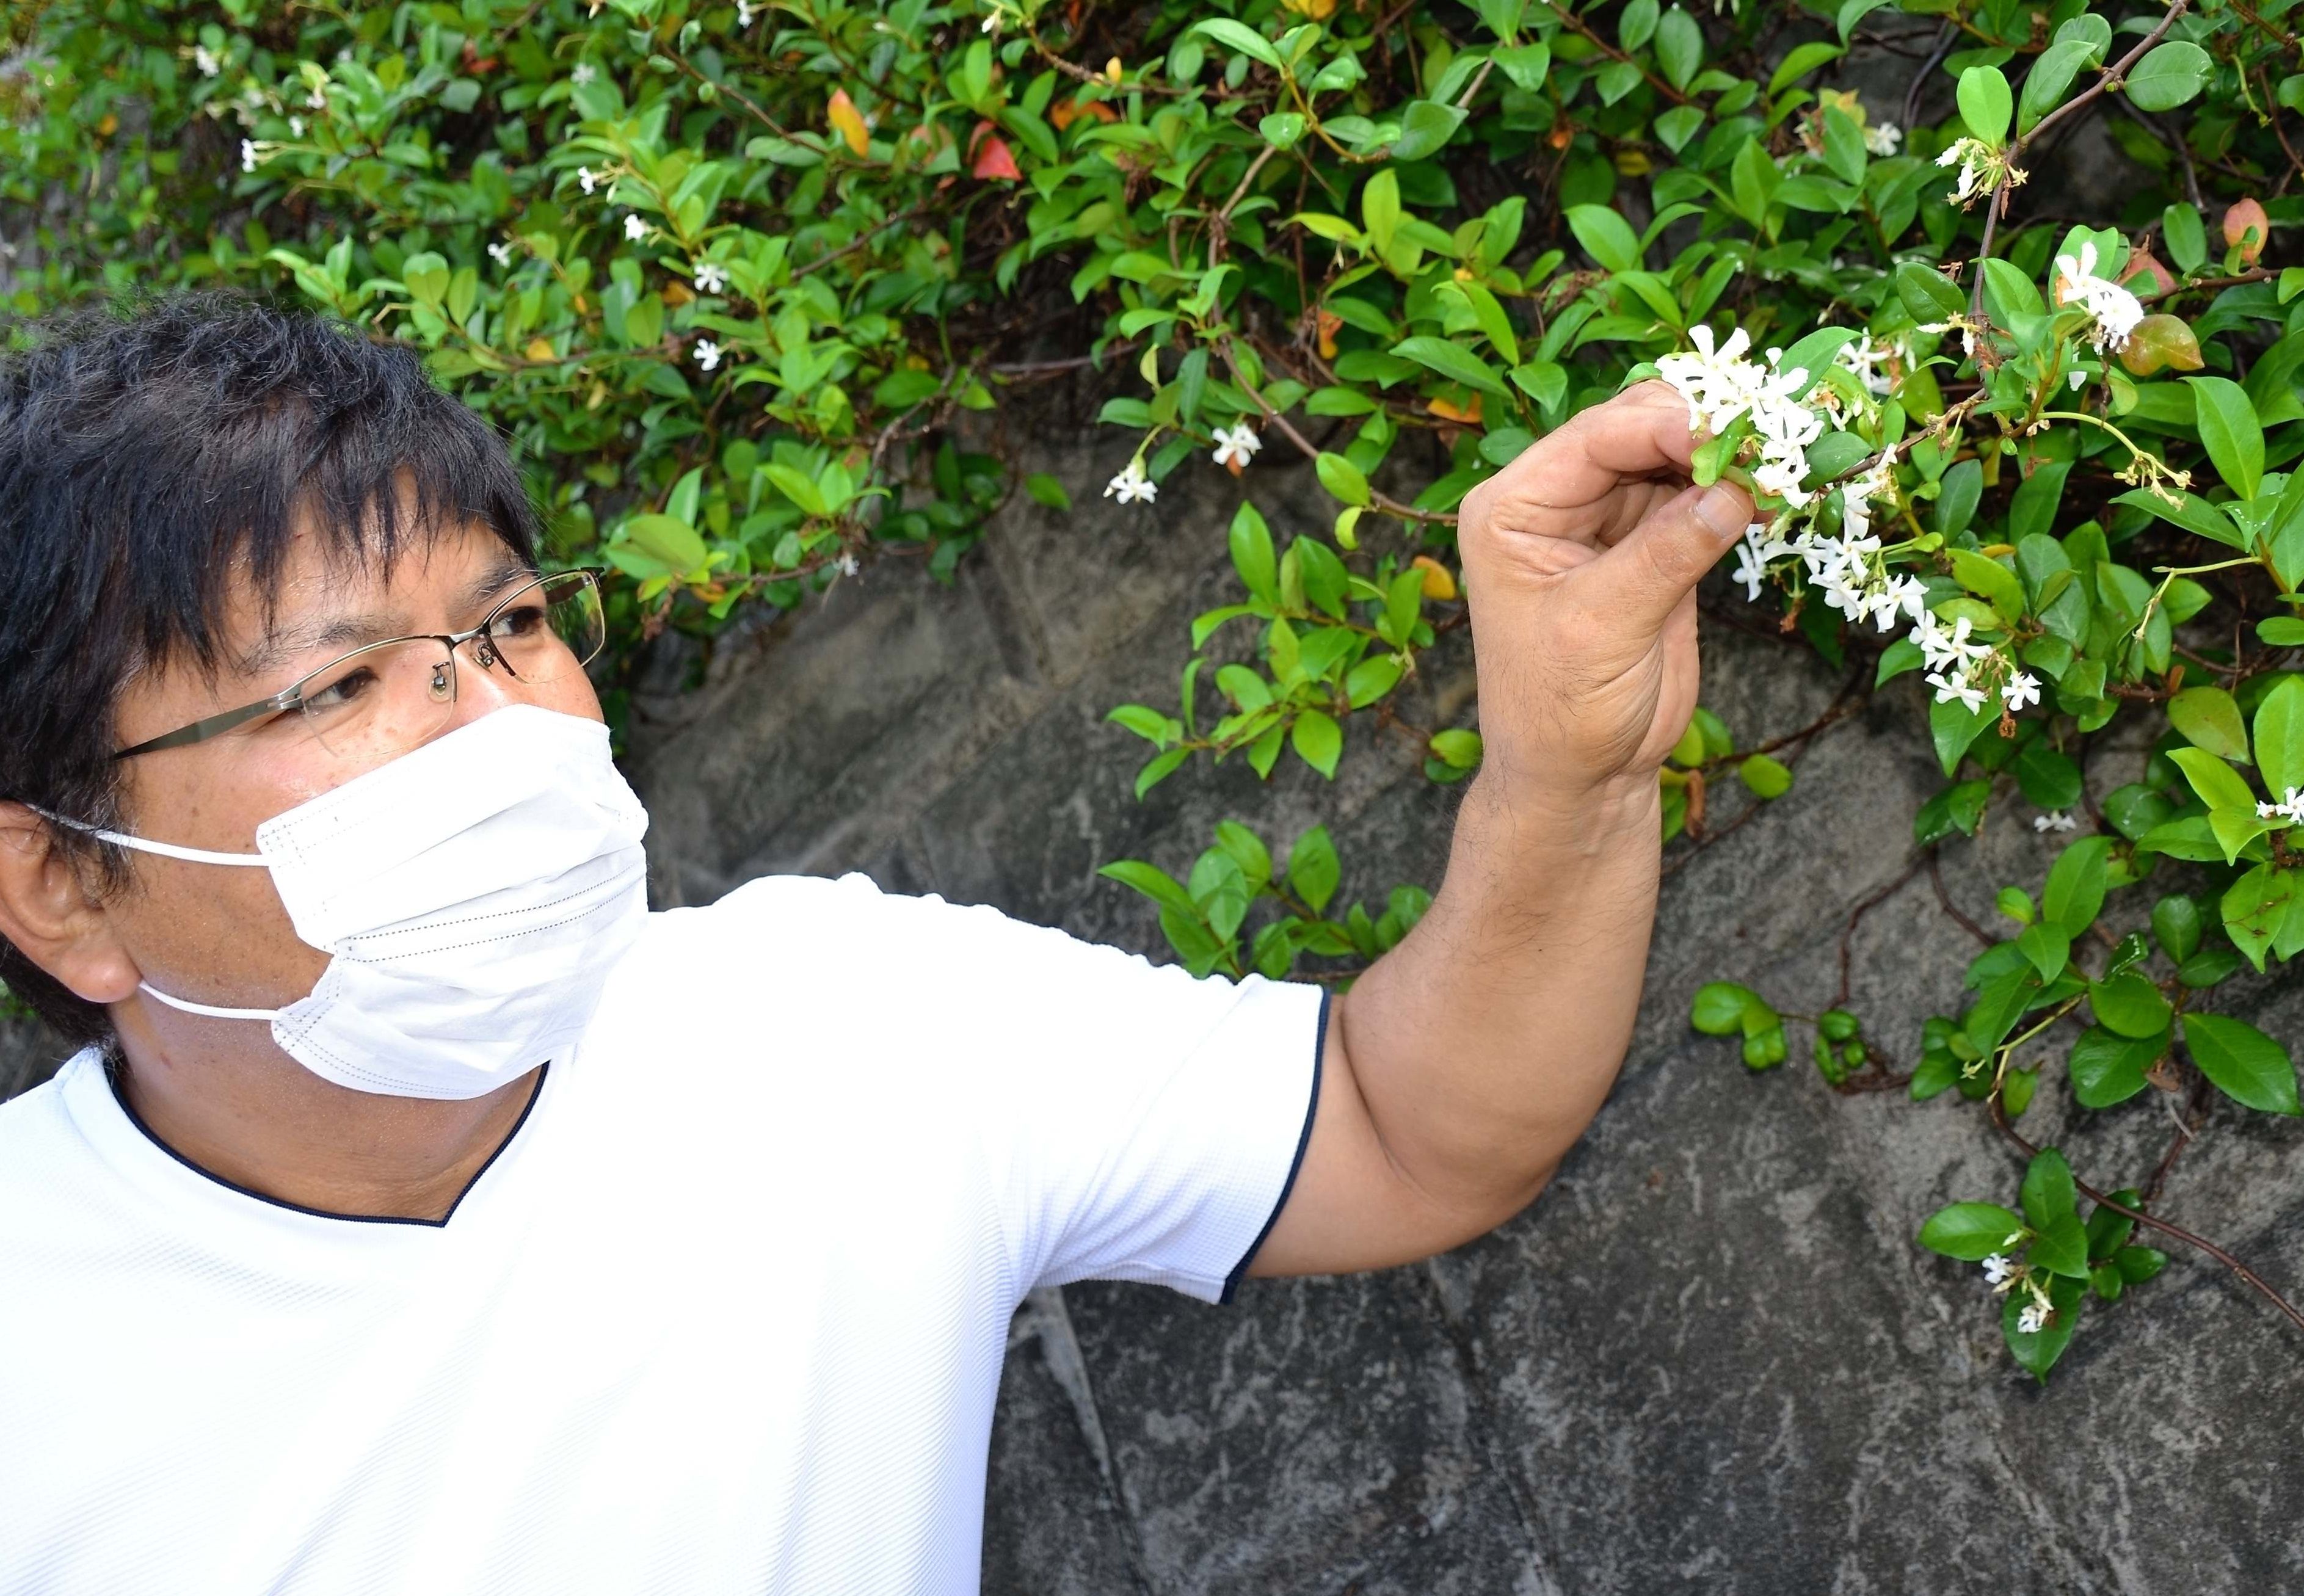 甘い香りの白い花 それはジャスミンではなく 読者から指摘で判明 沖縄タイムス プラス ニュース 沖縄タイムス プラス